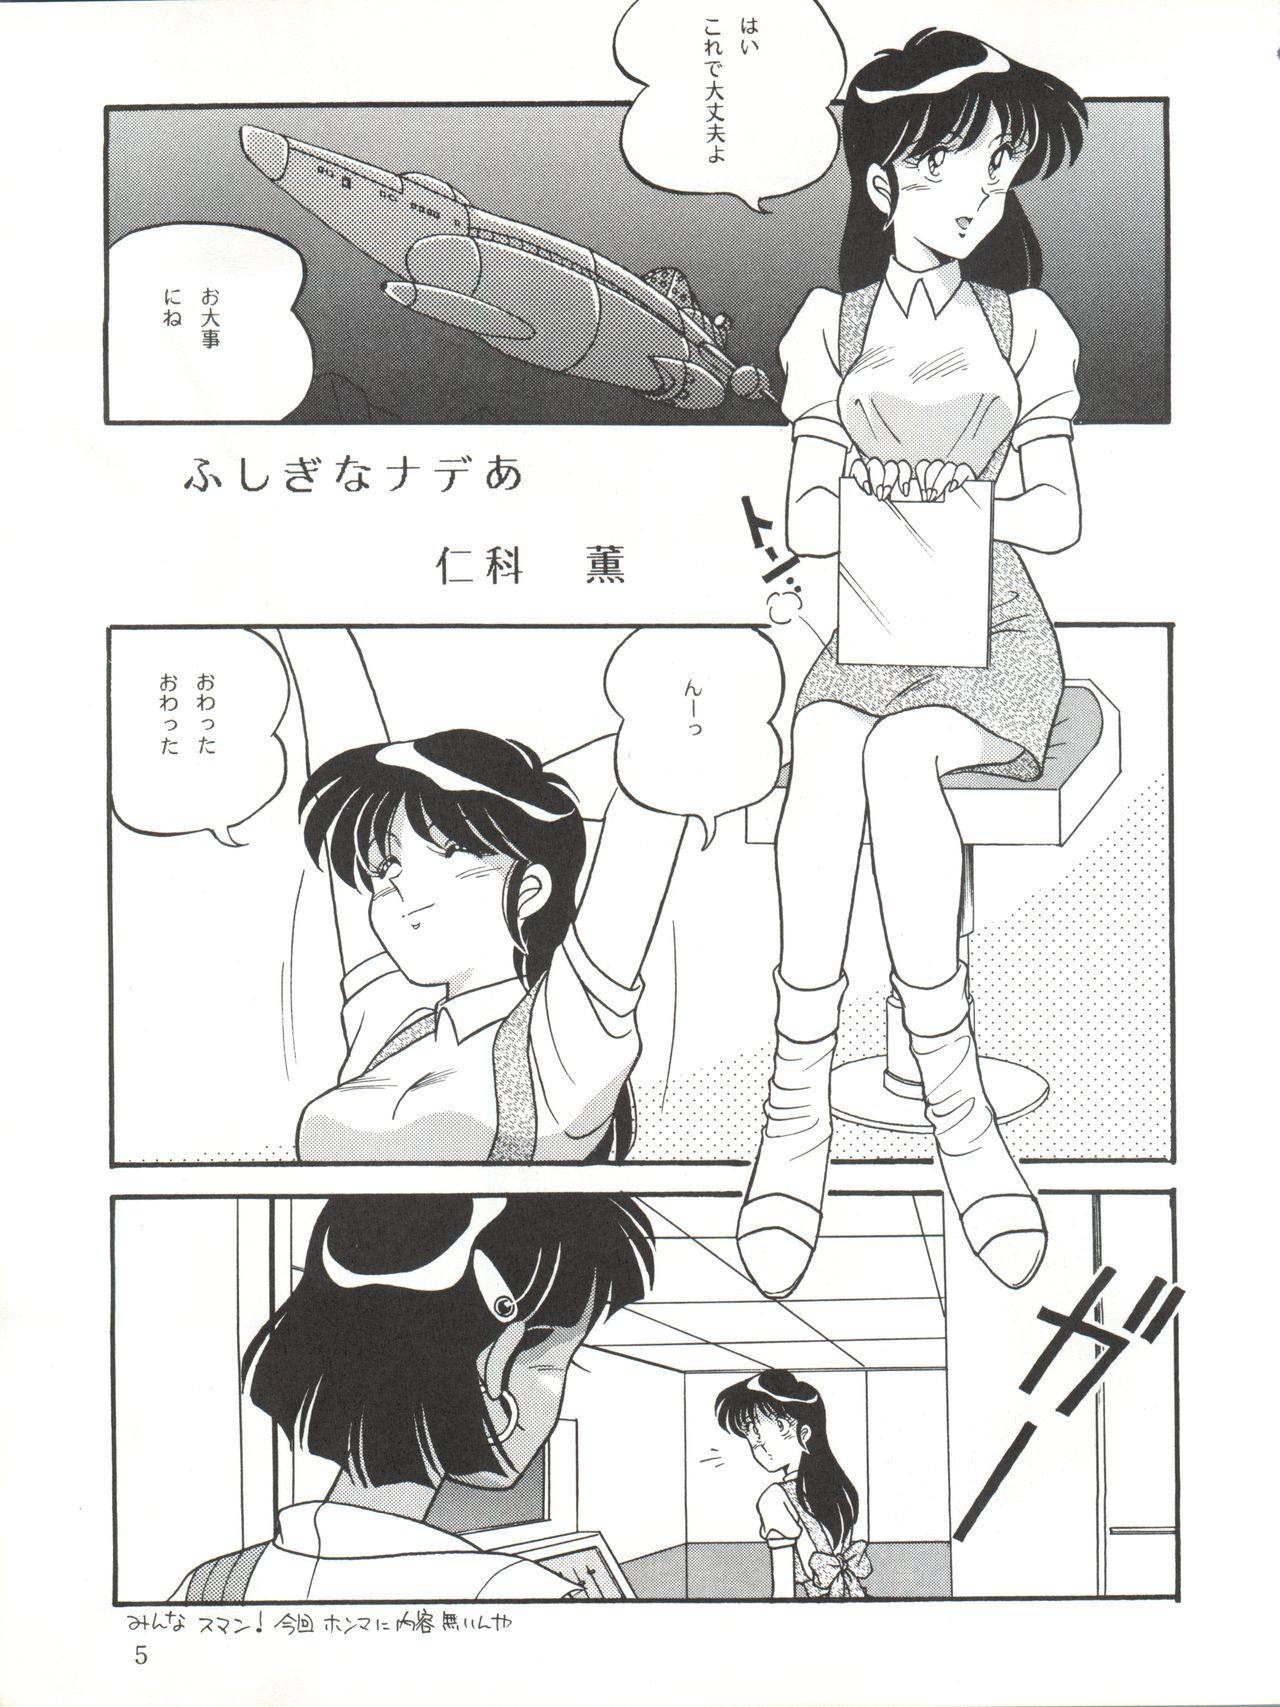 Pretty Vocalization 2 - Fushigi no umi no nadia Huge Tits - Page 5